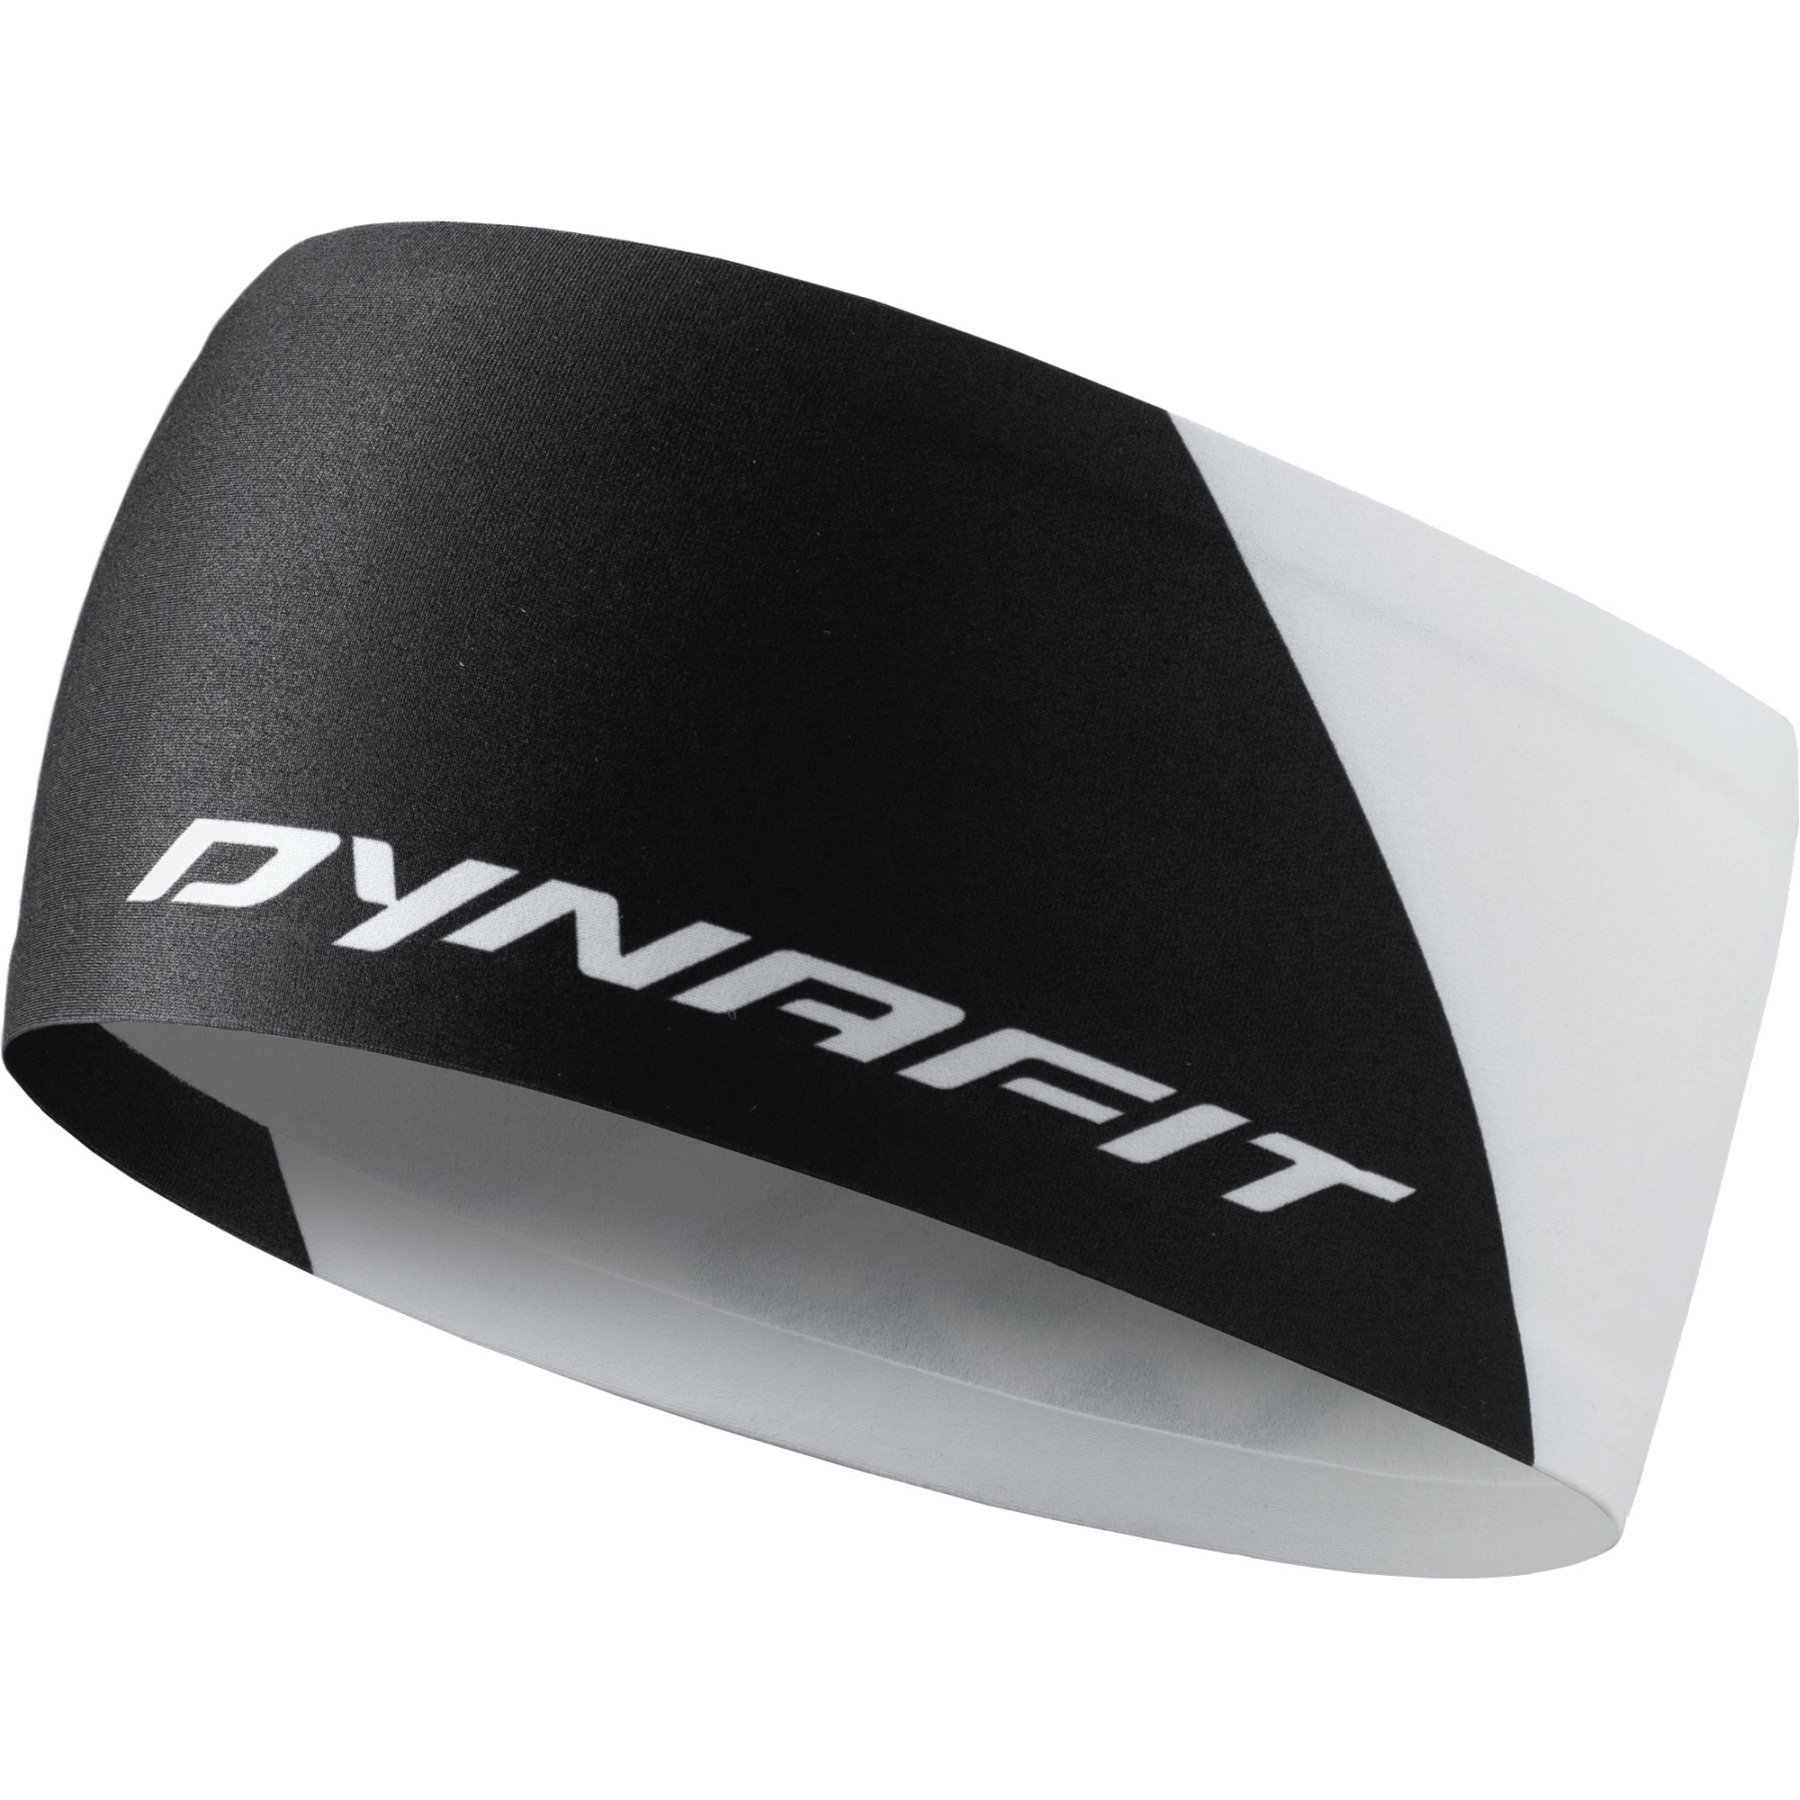 Produktbild von Dynafit Performance Dry Stirnband - Schwarz